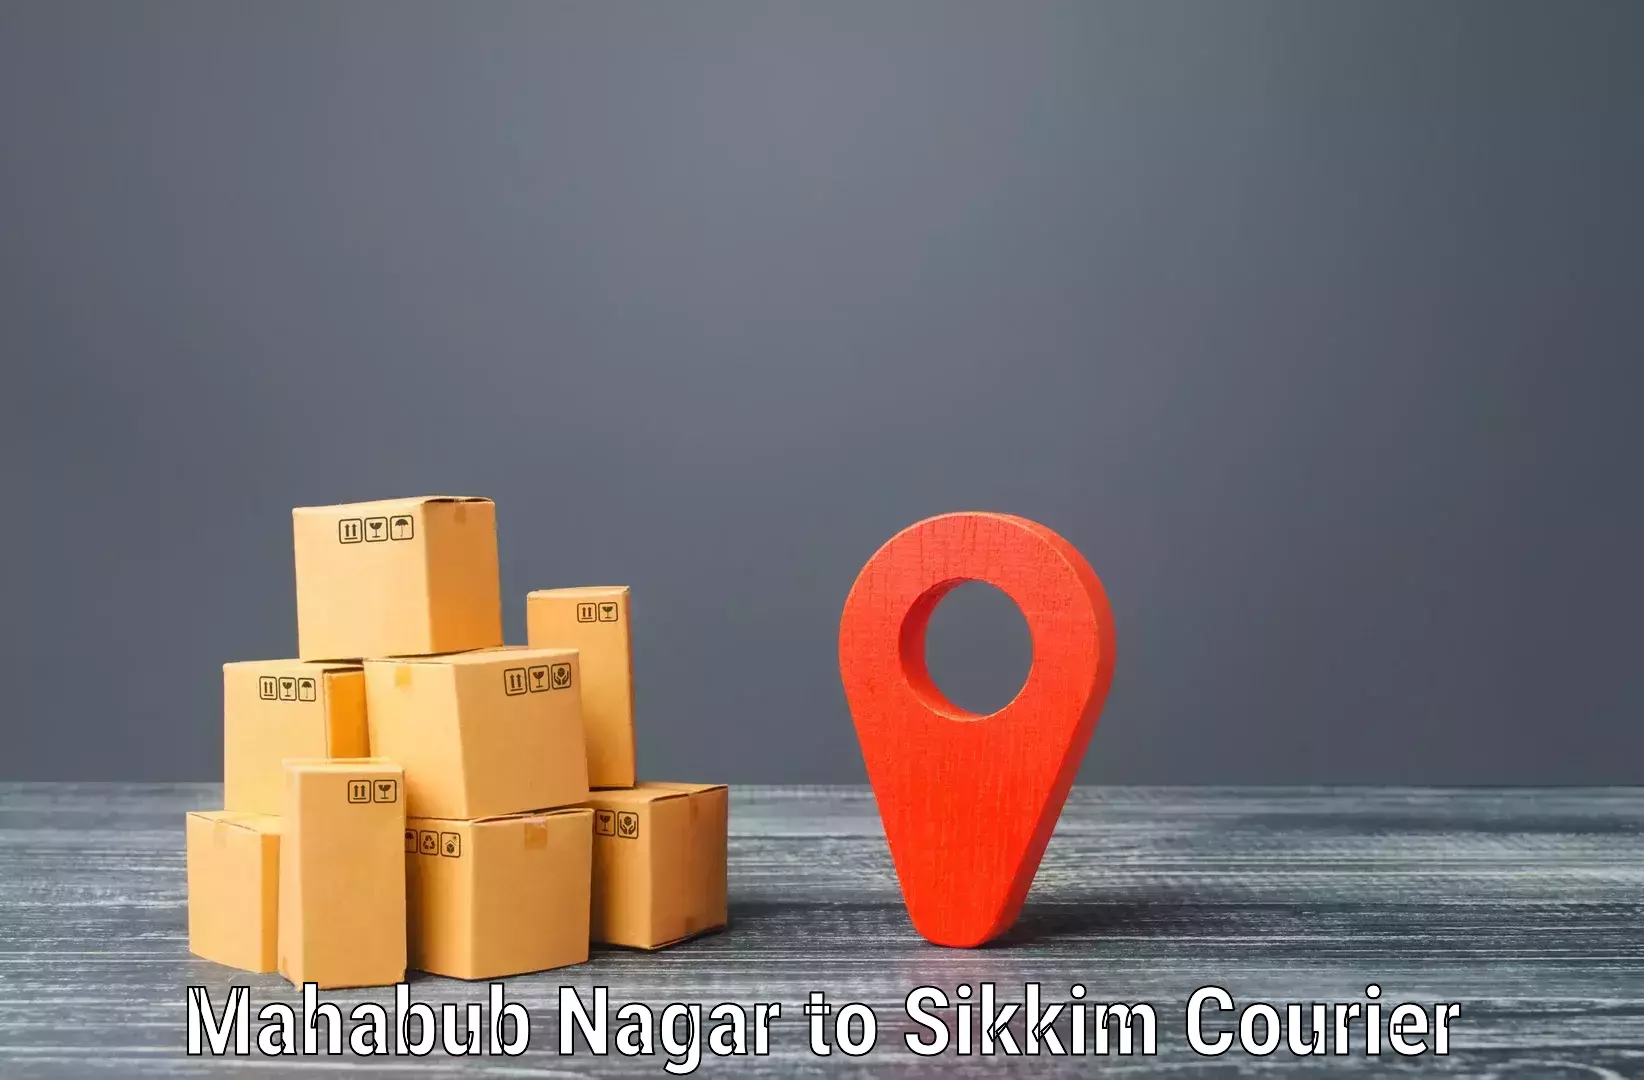 Digital courier platforms Mahabub Nagar to Gangtok